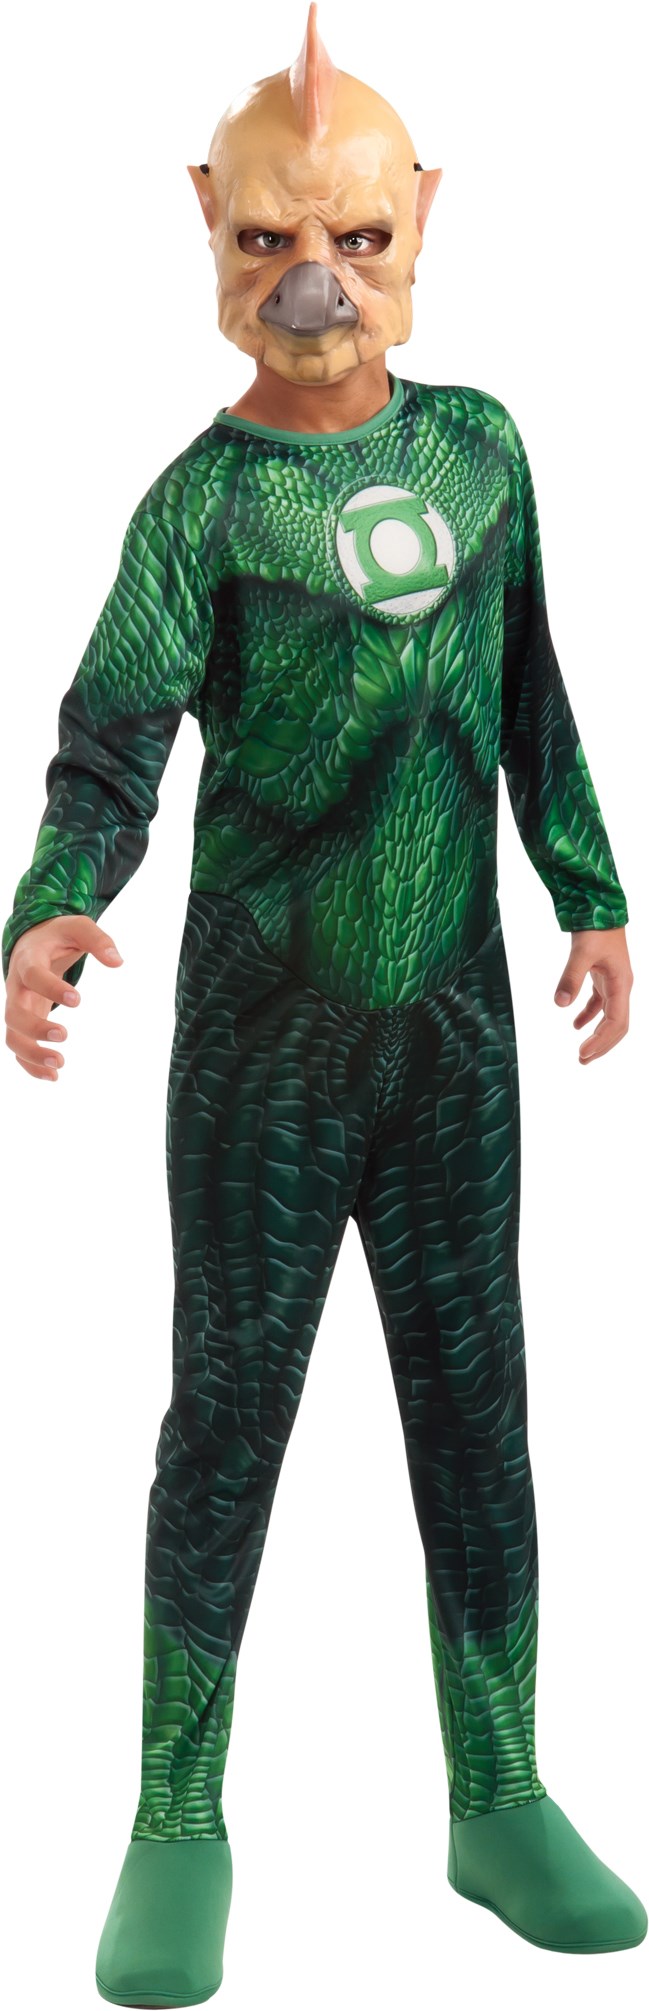 Green Lantern - Tomar-Re Child Costume - Large